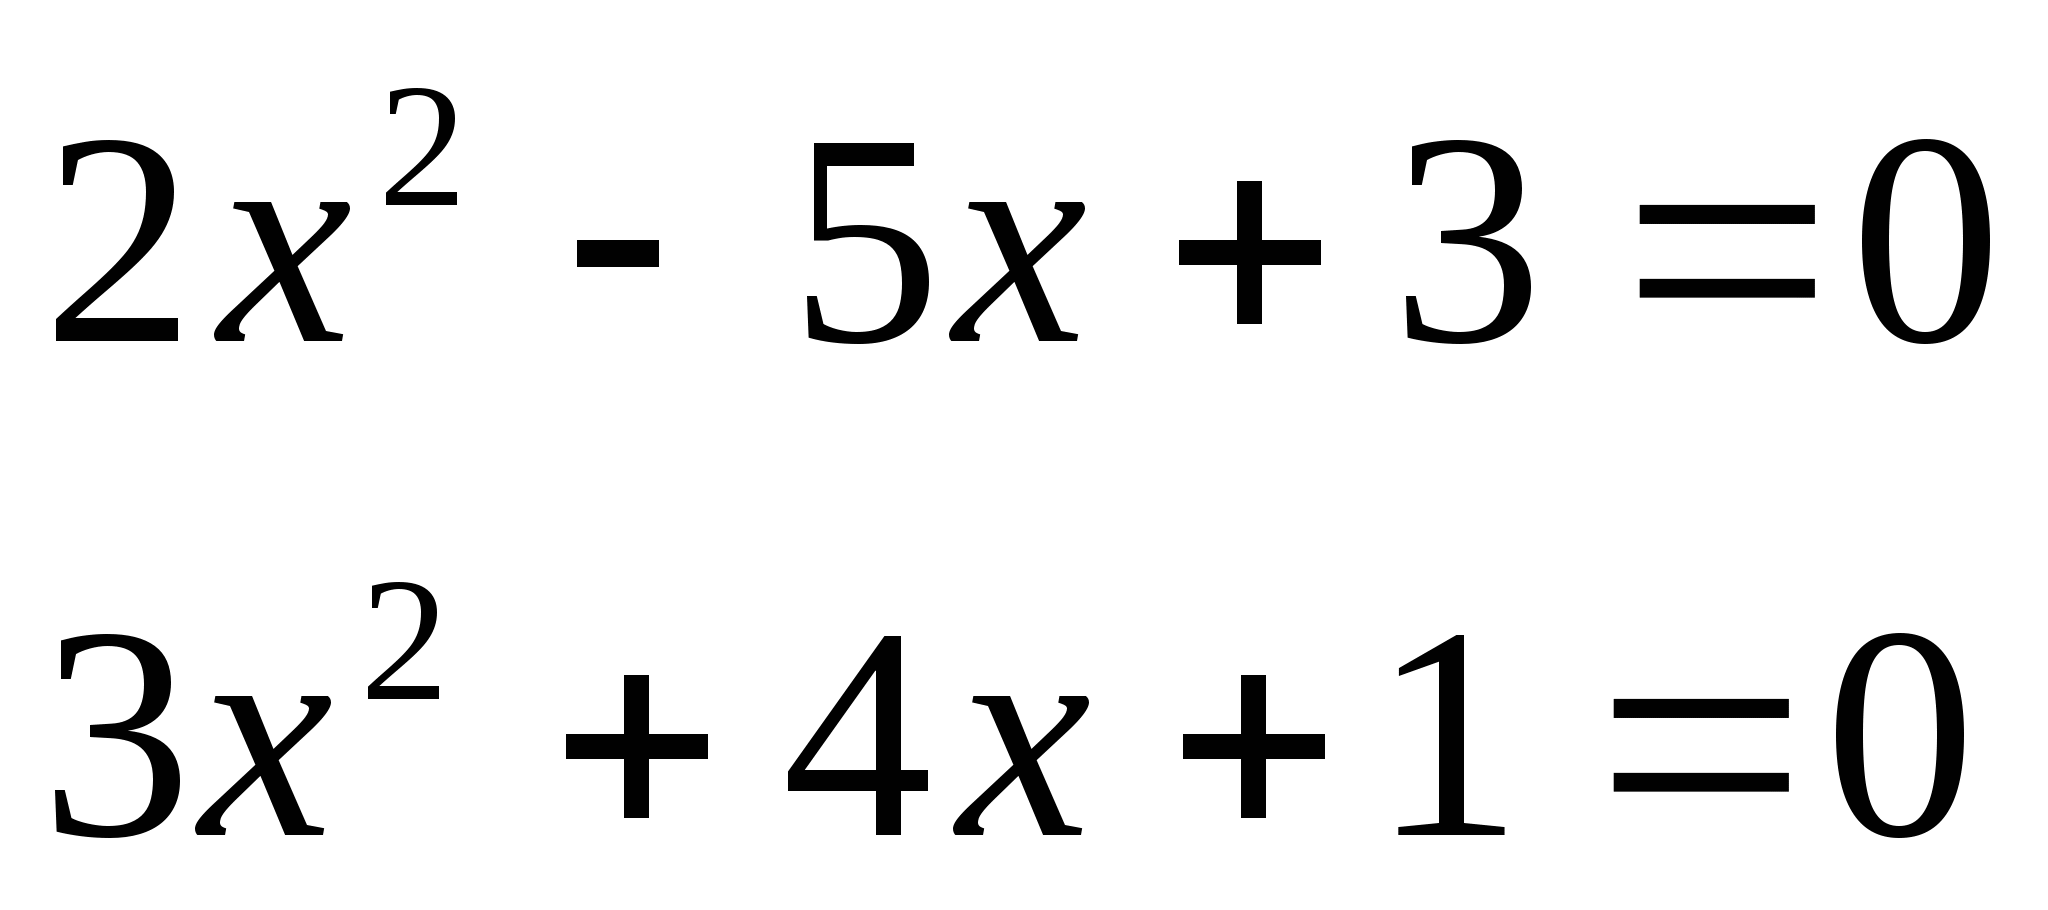 Открытый урок алгебры по теме Квадратные уравнения